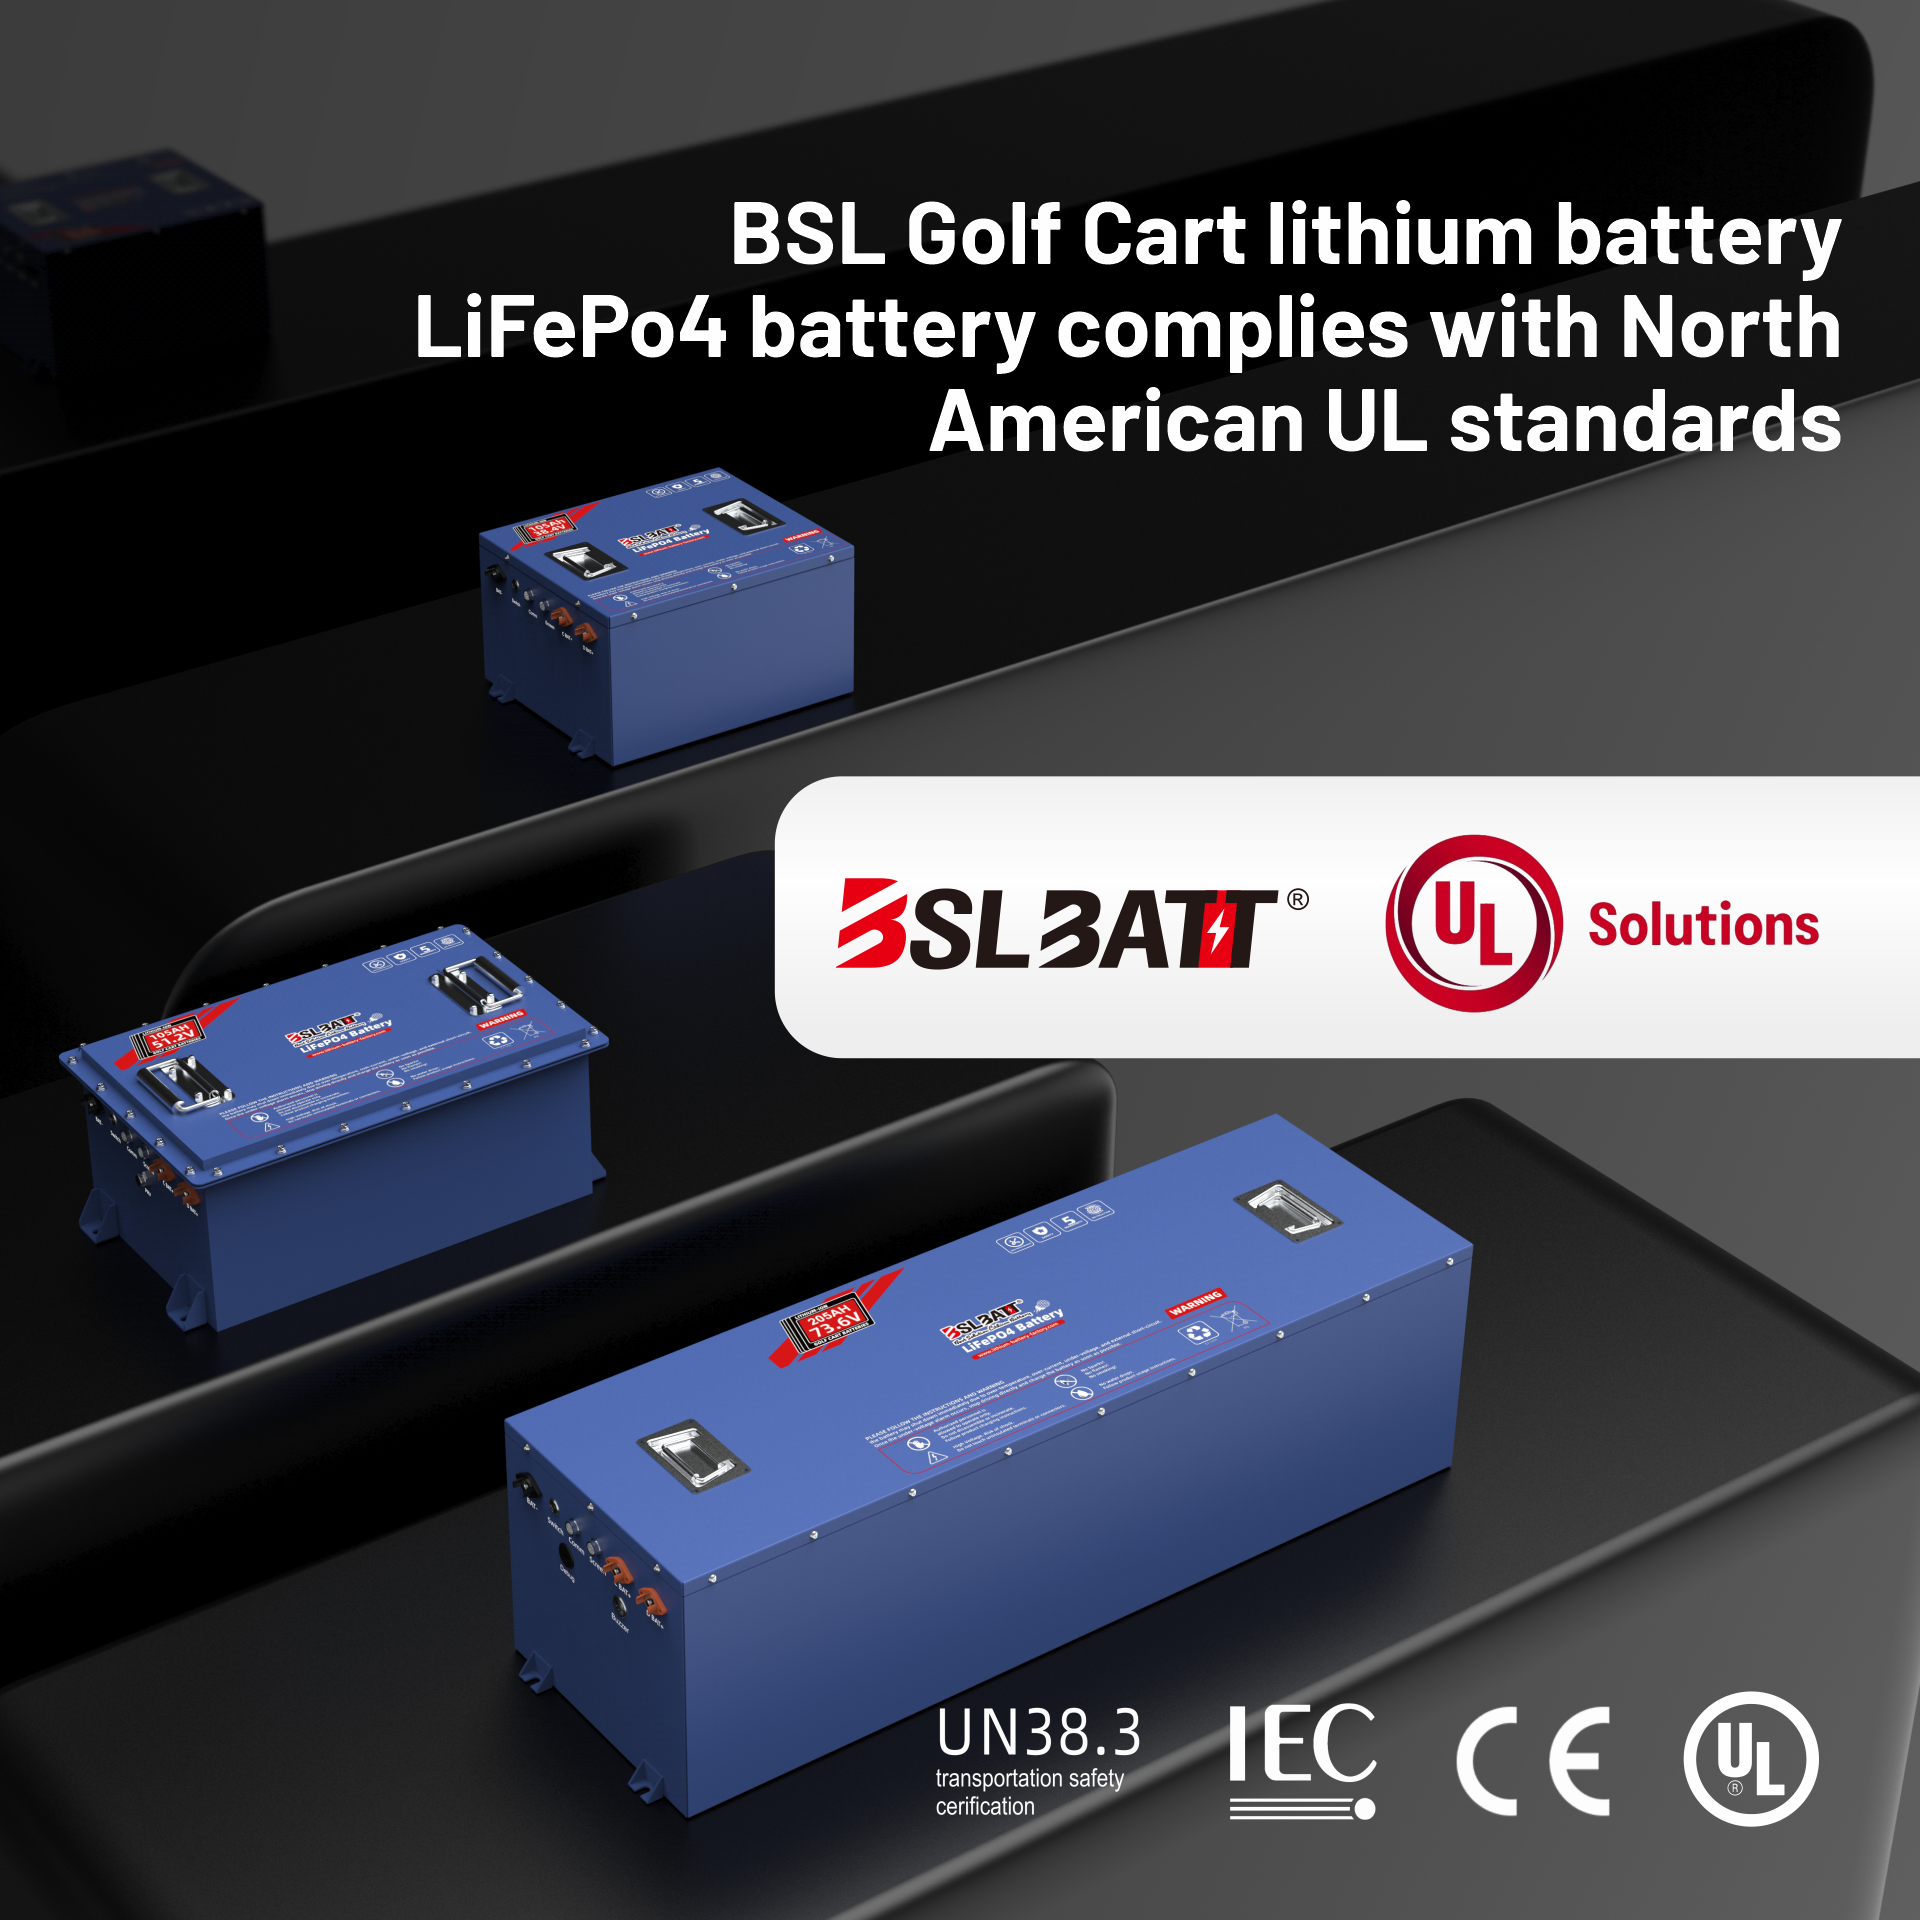 BSLBATT Golf Cart Lithium Battery: North American Market Leader